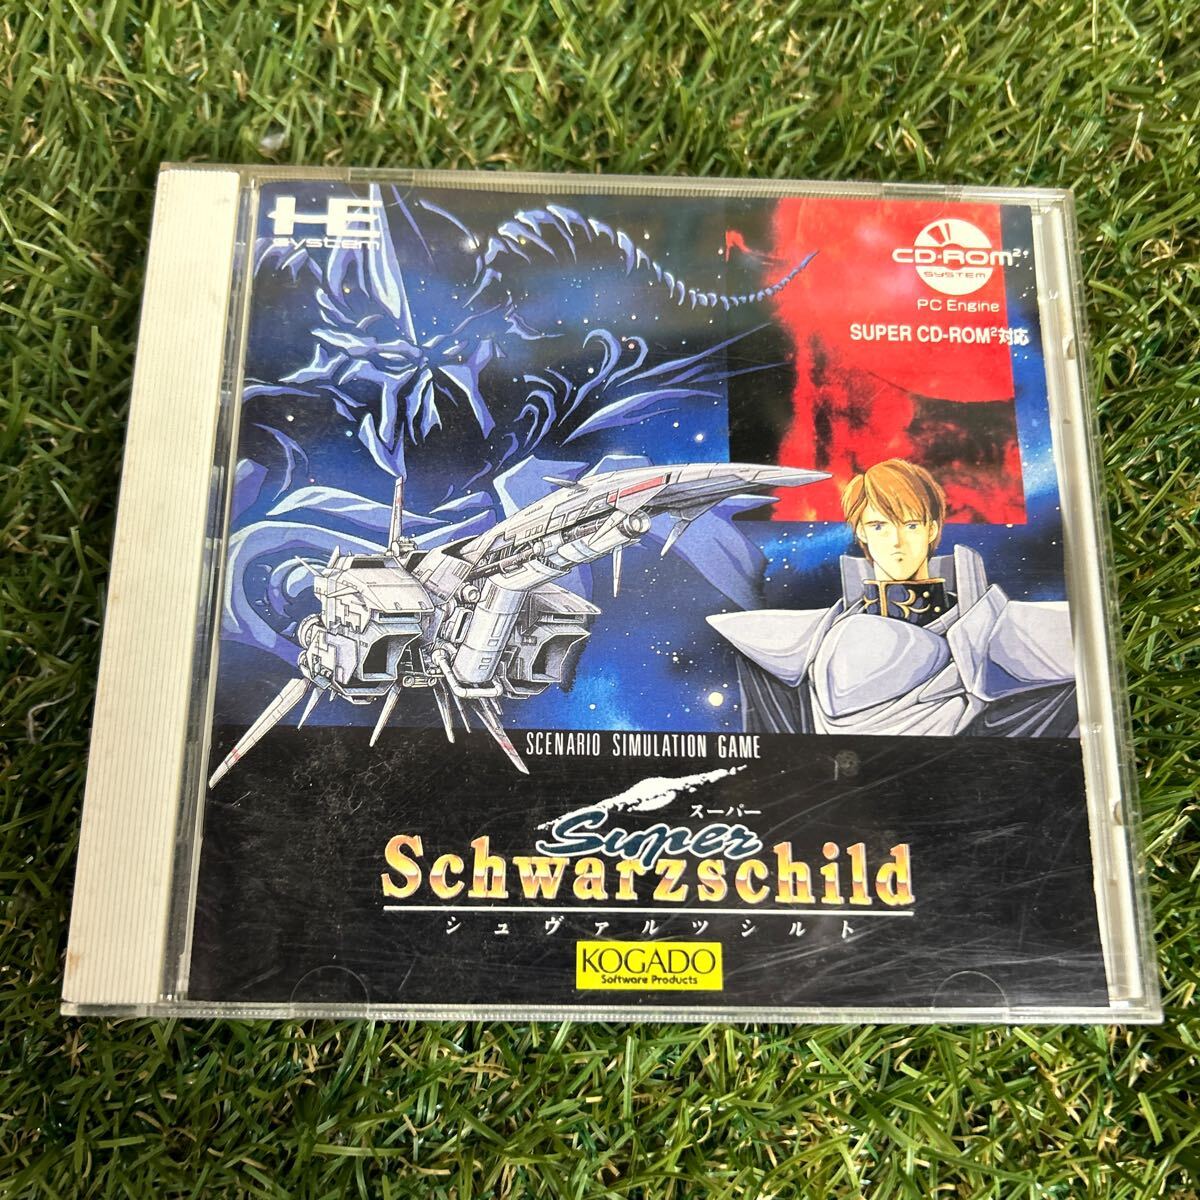 ★スーパーシュヴァルツシルト/Schwarzschild/PCエンジン★の画像1